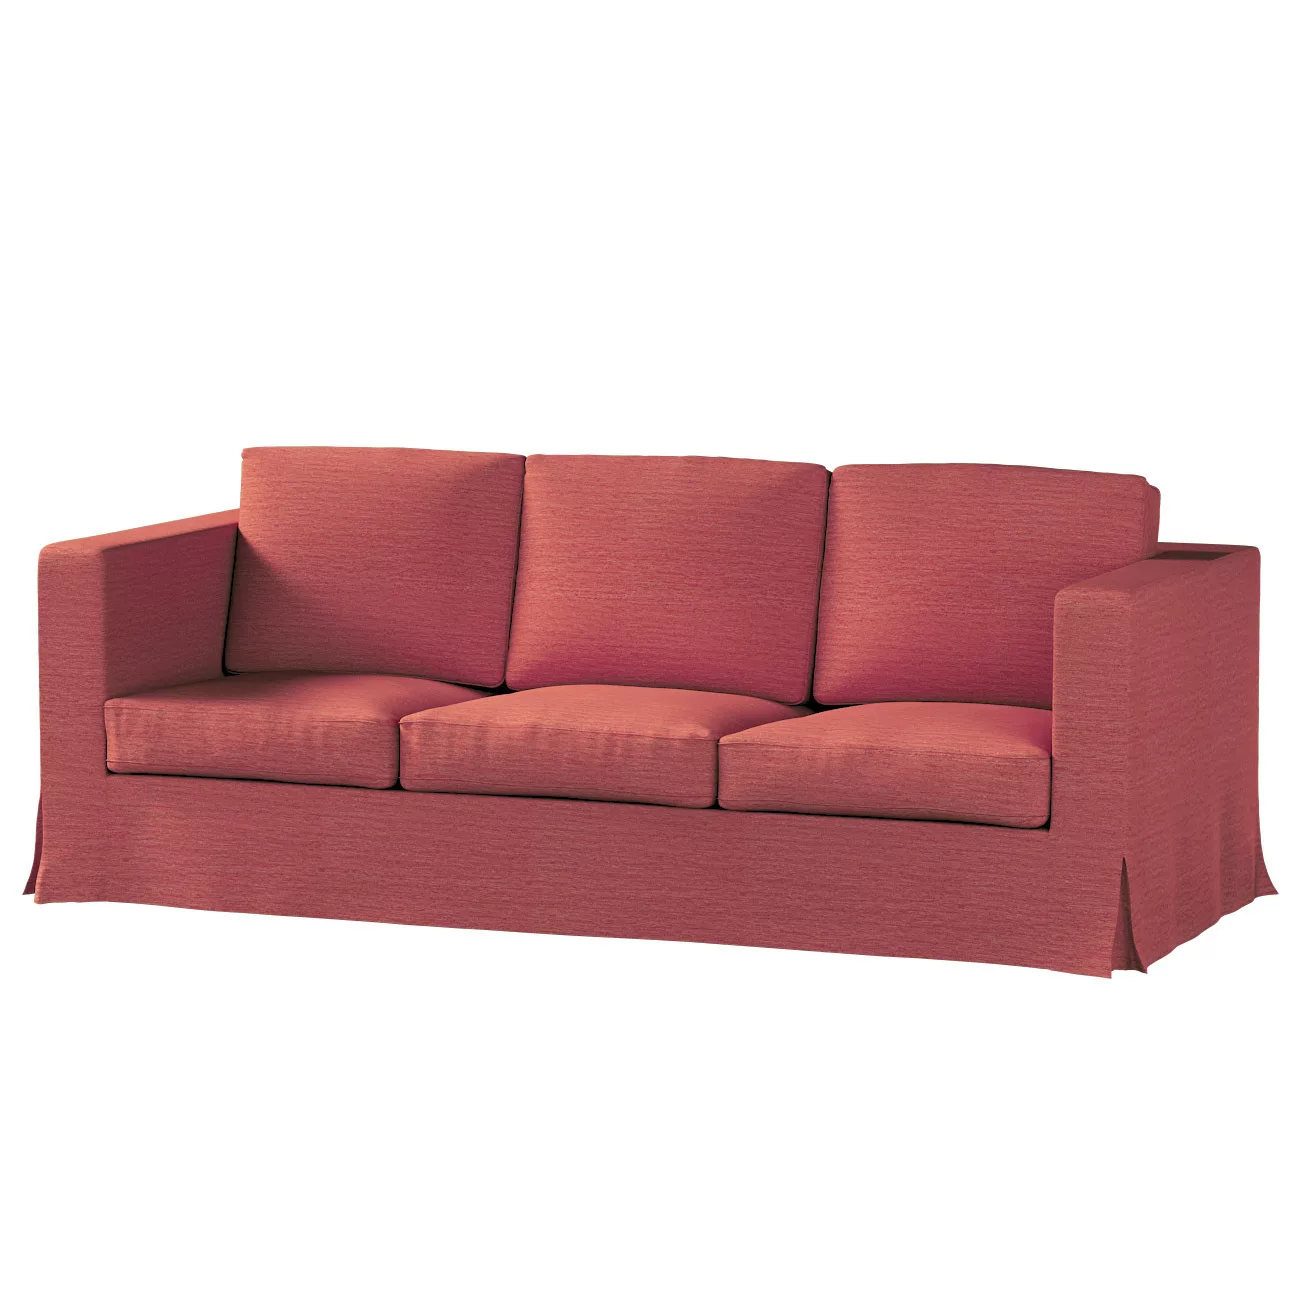 Bezug für Karlanda 3-Sitzer Sofa nicht ausklappbar, lang, ziegelrot, Bezug günstig online kaufen